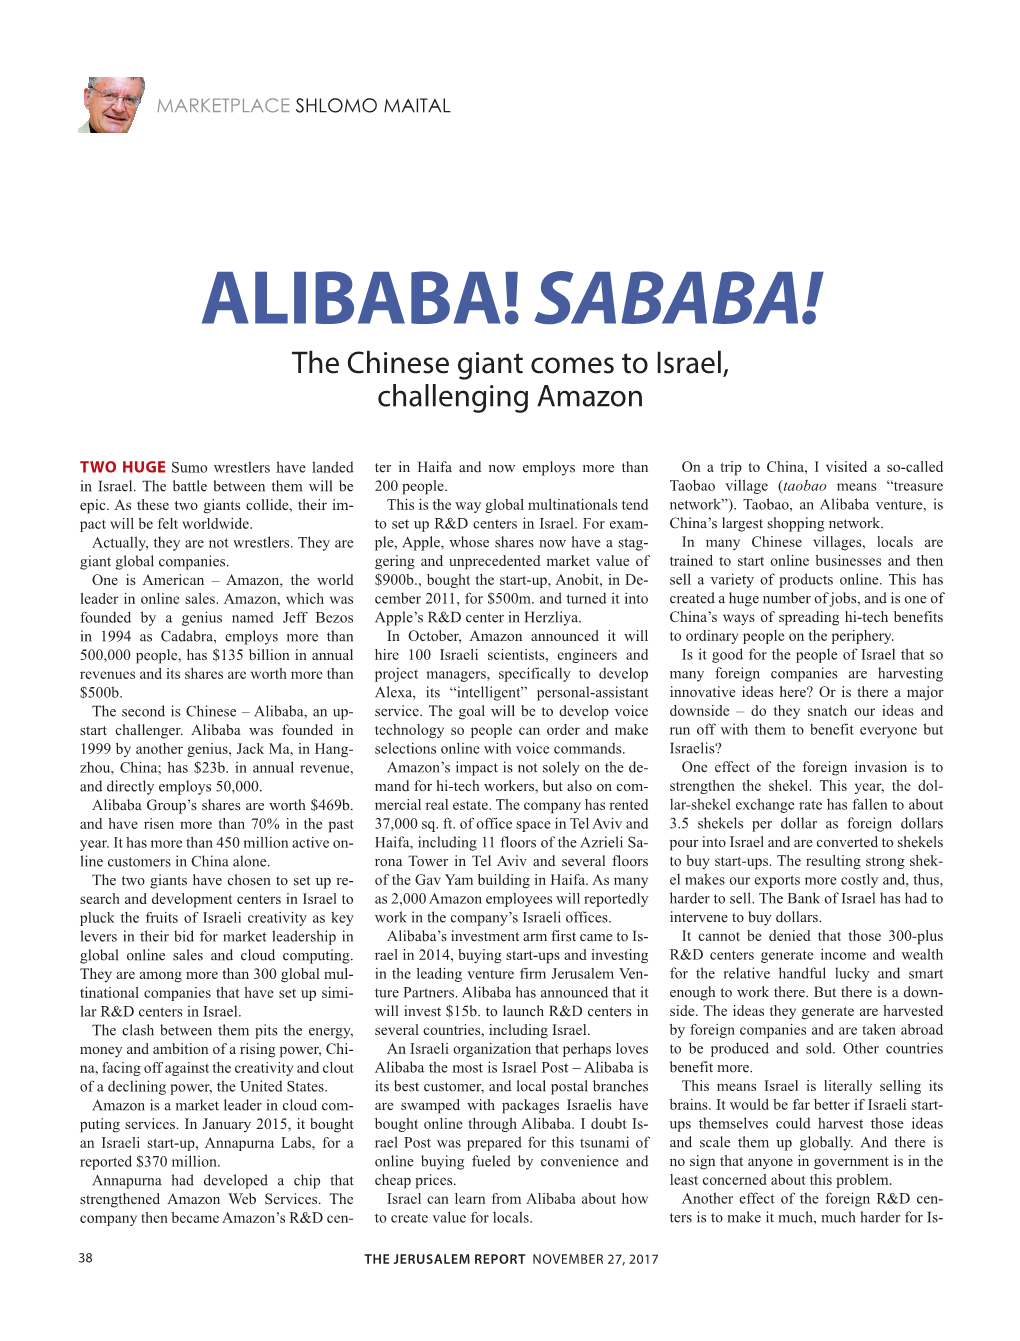 ALIBABA! SABABA! the Chinese Giant Comes to Israel, Challenging Amazon